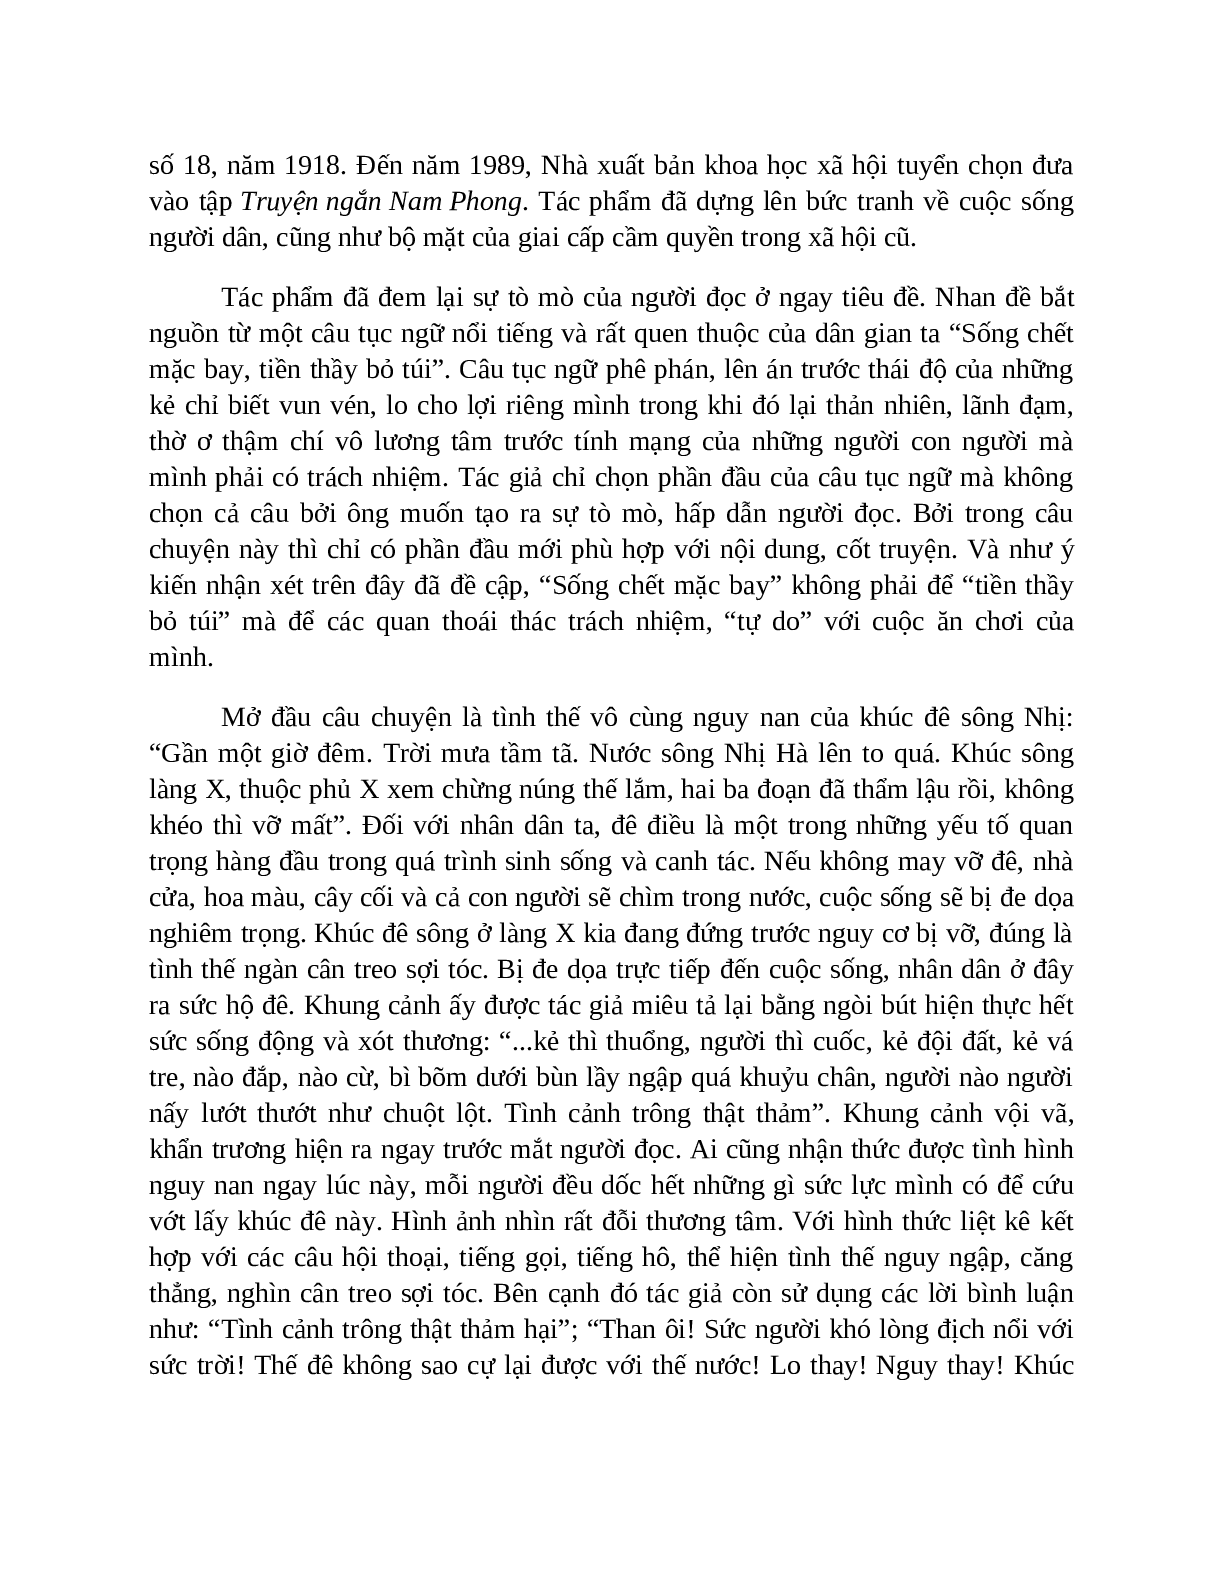 Sơ đồ tư duy bài Sống chết mặc bay dễ nhớ, ngắn nhất - Ngữ văn lớp 7 (trang 6)